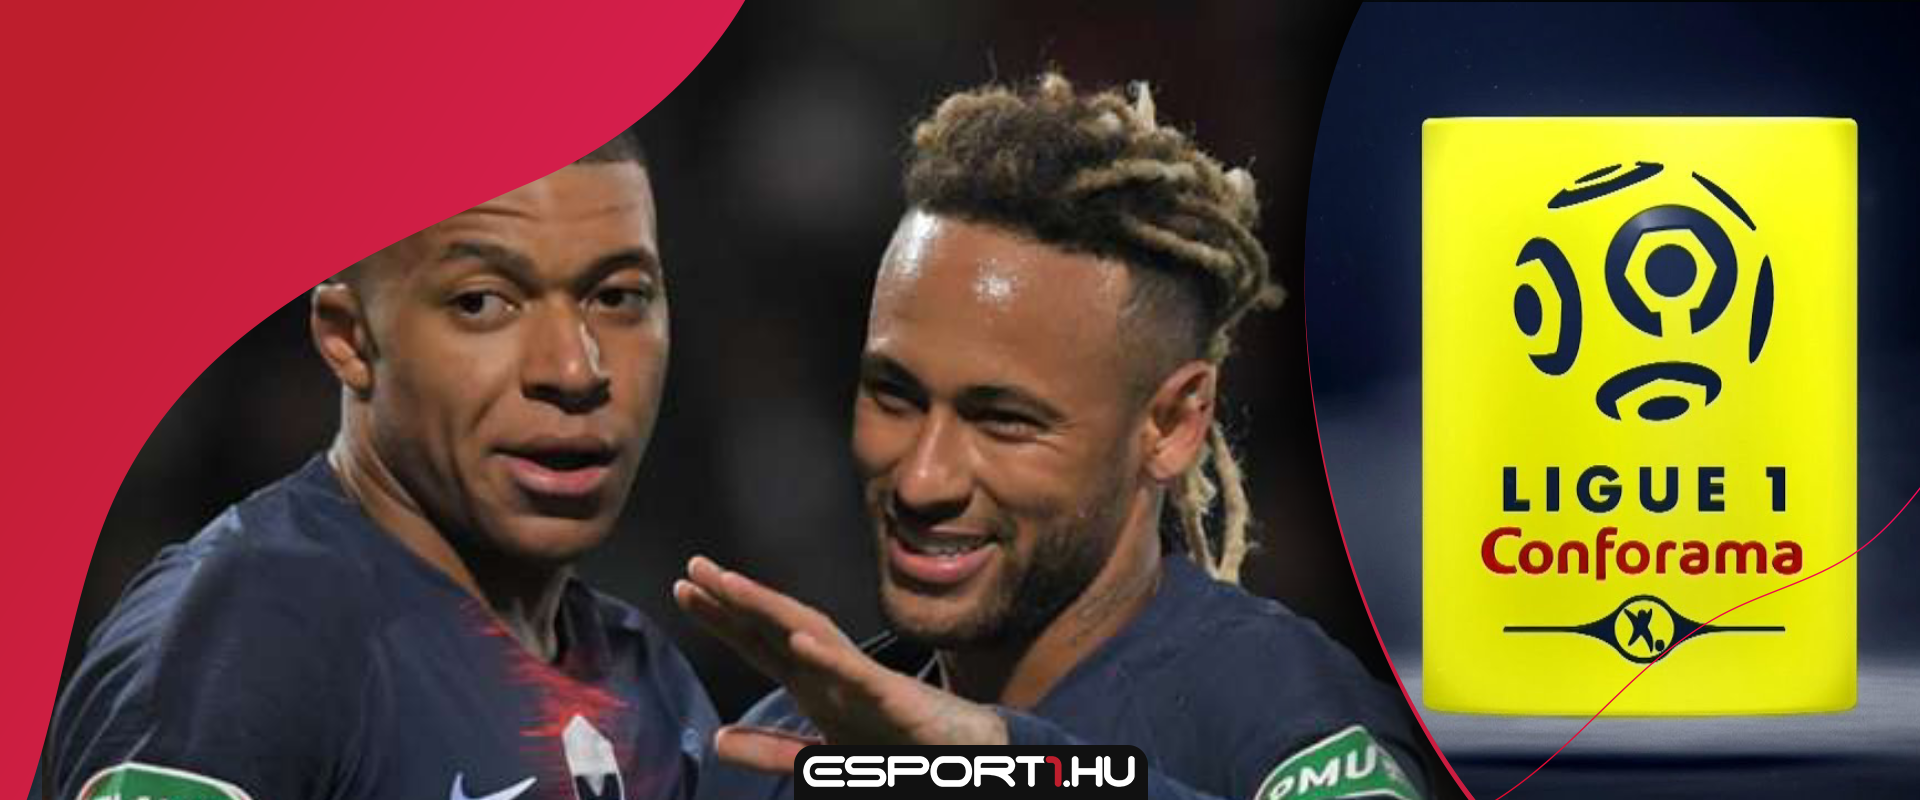 Egy játékos 513 81+ Ligue 1 upgrade pakkot nyitott ki Neymar és Mbappé miatt